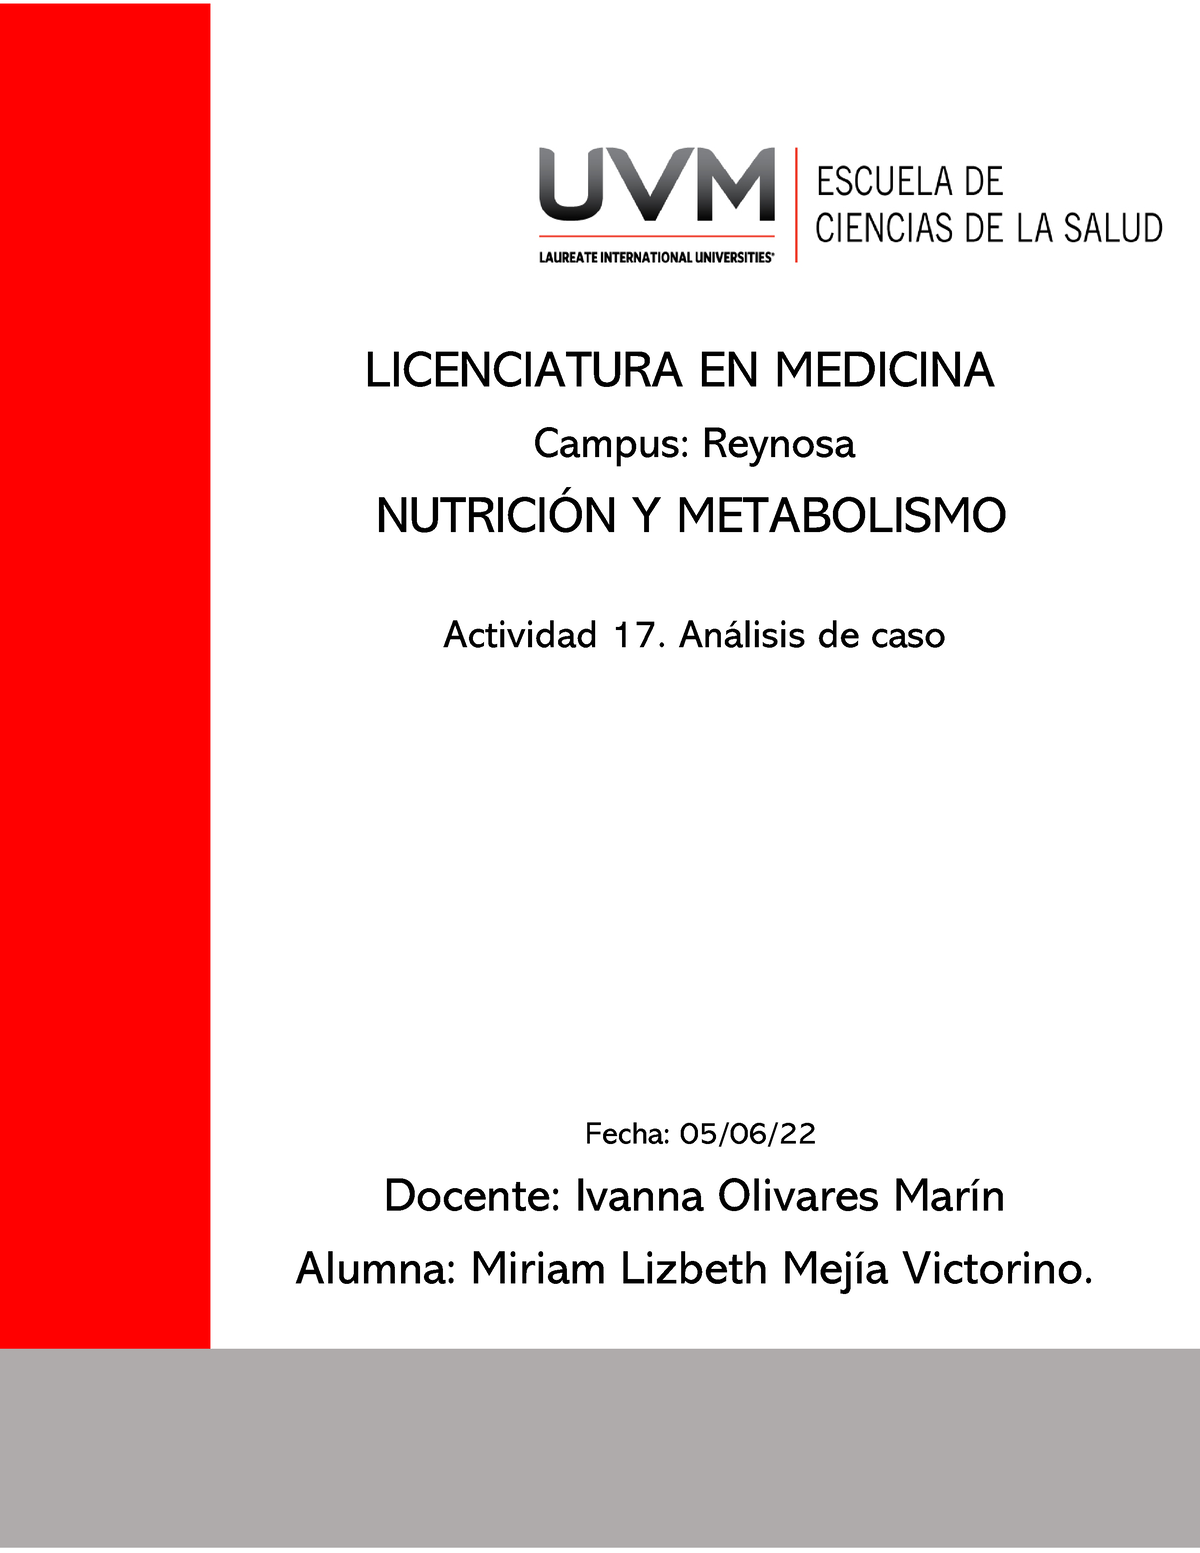 A17mlmv Actividad 17 De Nutrición Y Metabolismo Análisis De Caso Licenciatura En Medicina 9808